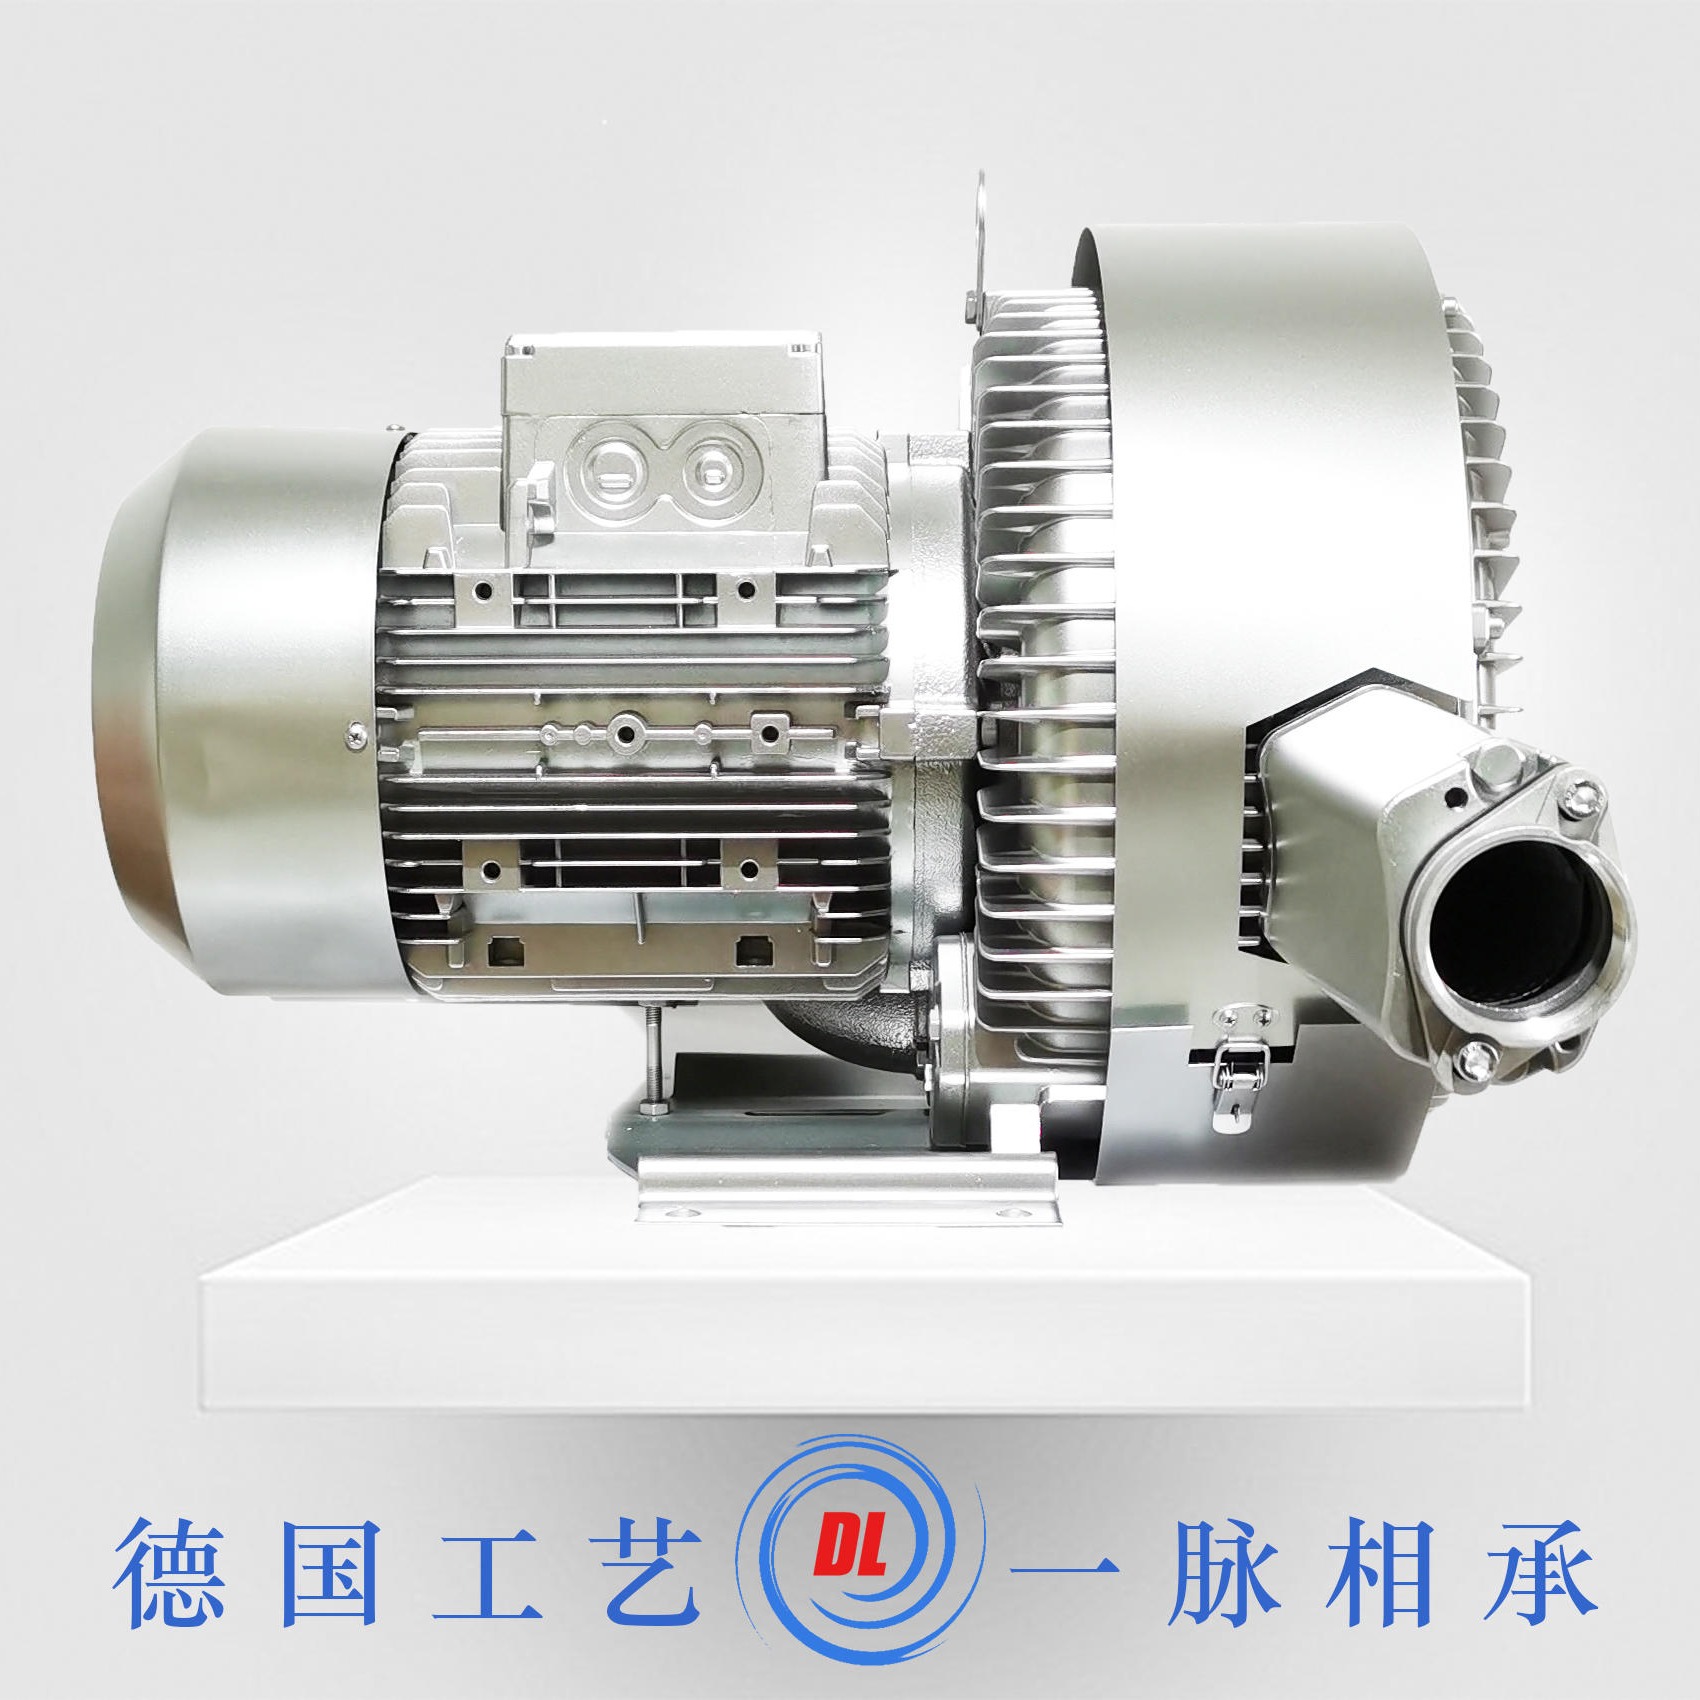 铸铝材质11kw双叶轮漩涡气泵  DL-82-X3-11kw吸料机旋涡风机